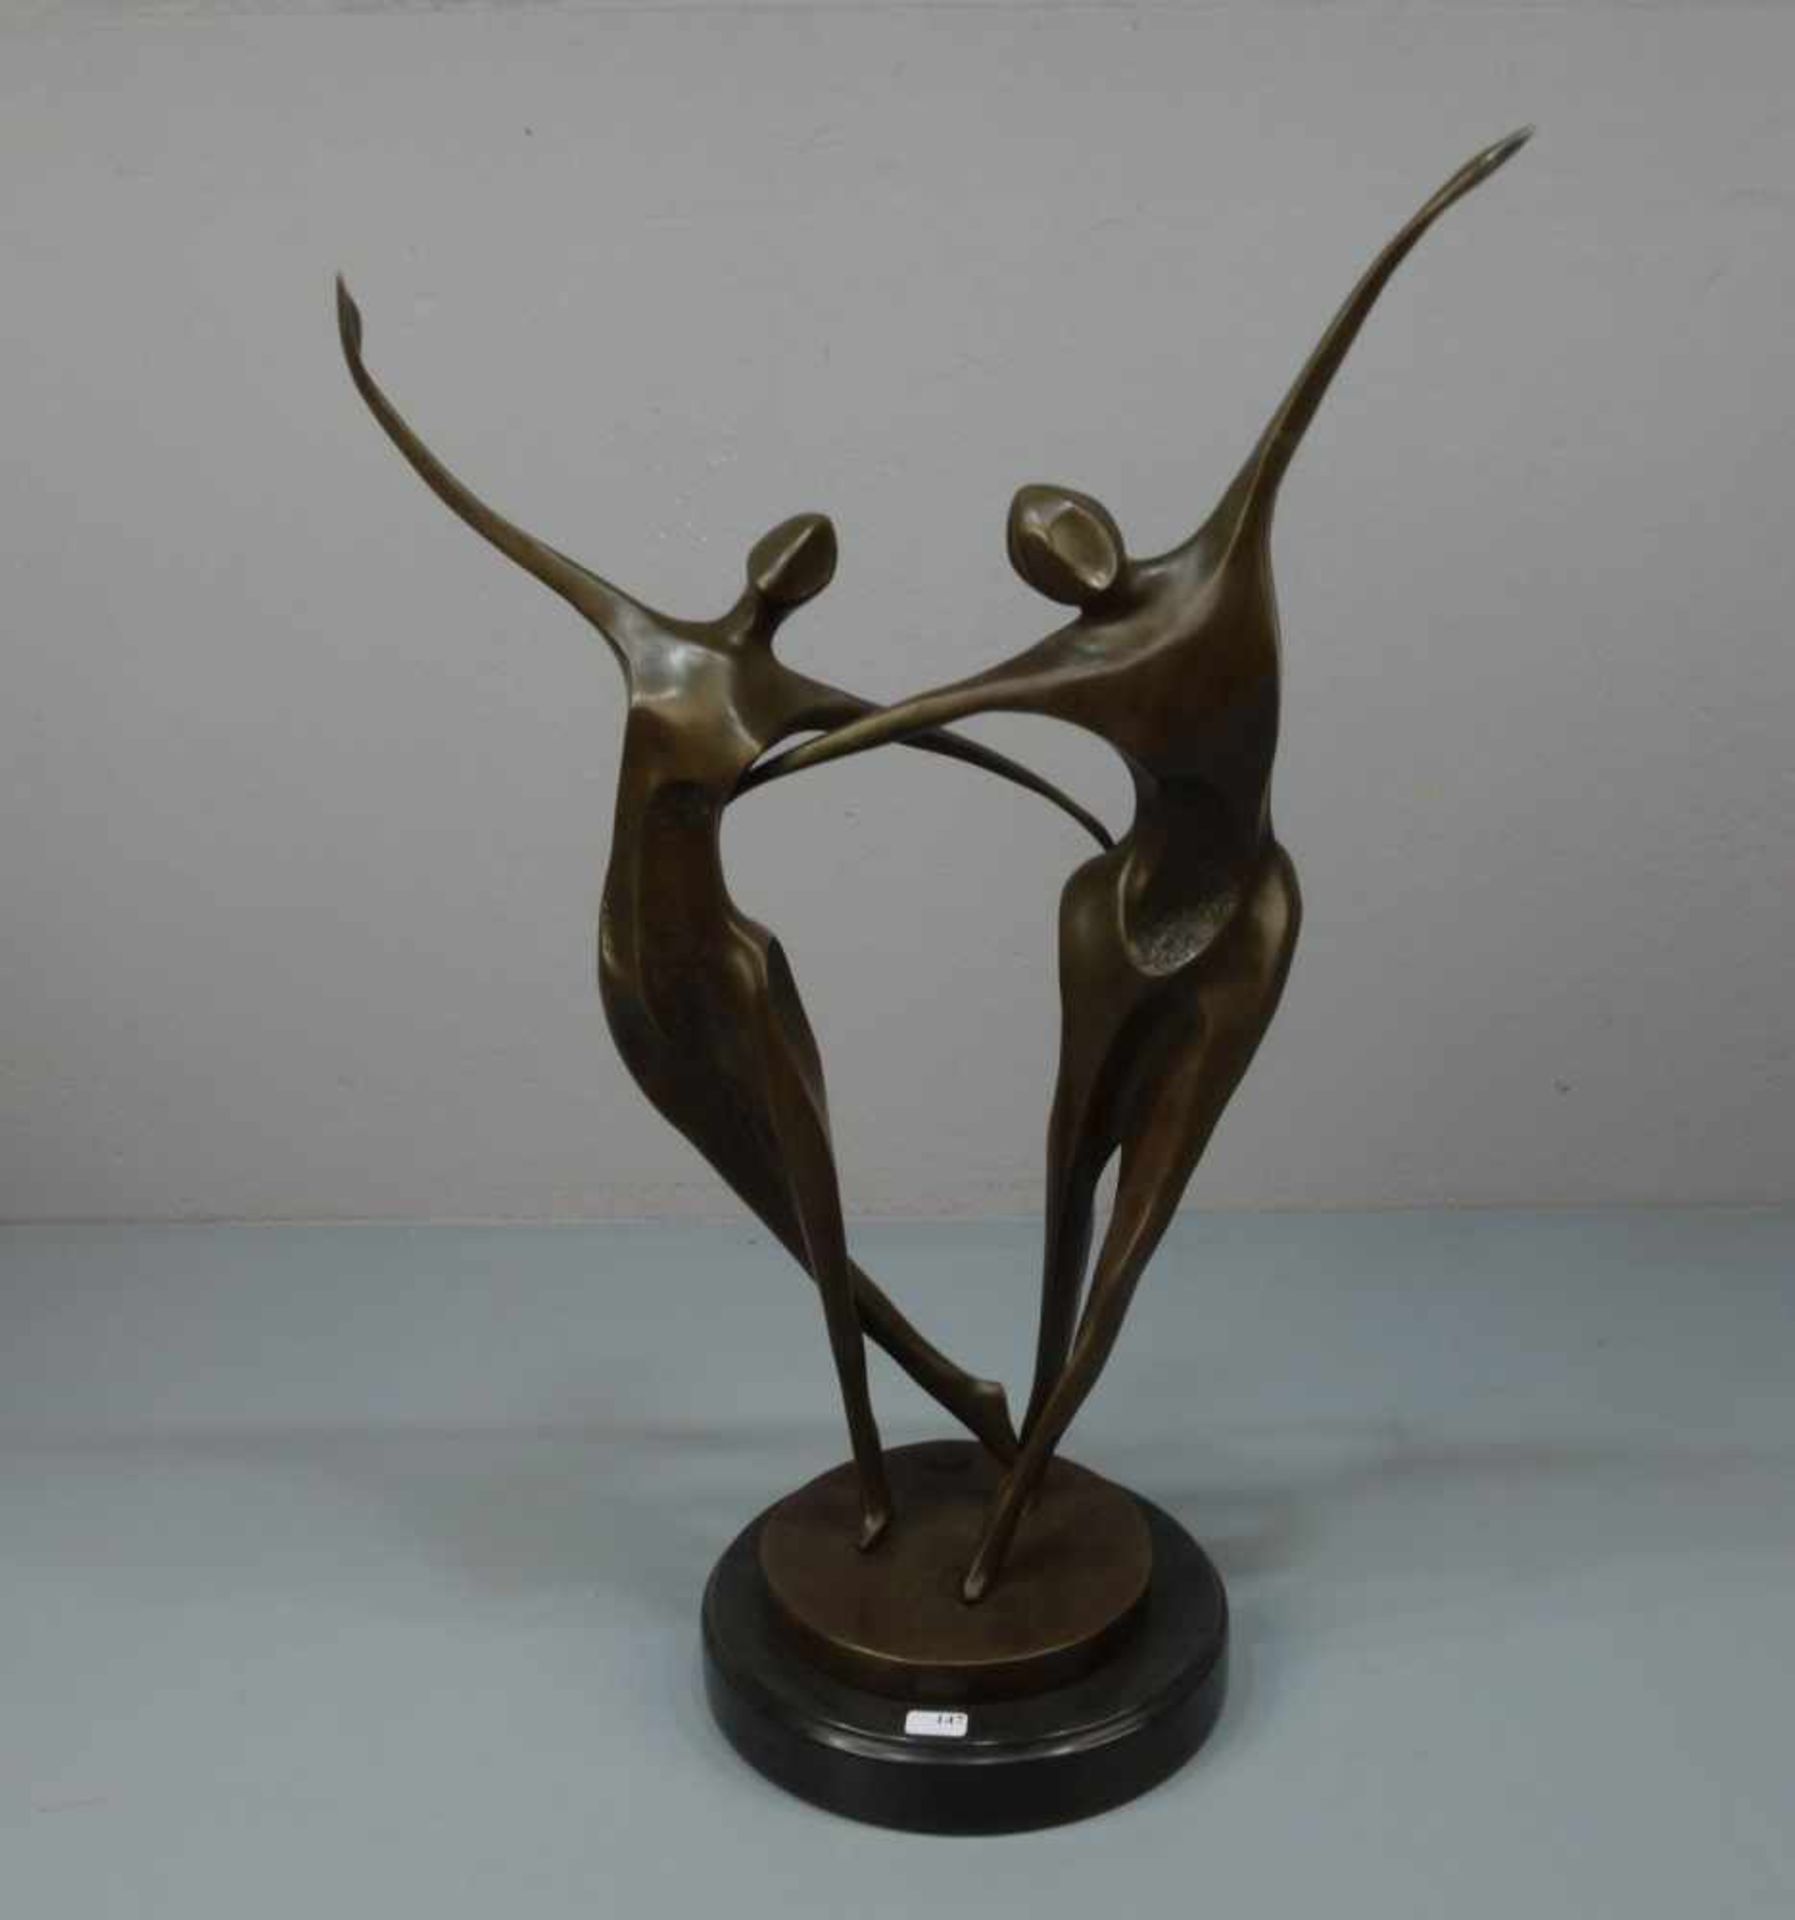 LOPEZ, MIGUEL FERNANDO (auch Milo, geb. 1955 in Lissabon), Skulptur / sculpture: "Tanzendes Paar",